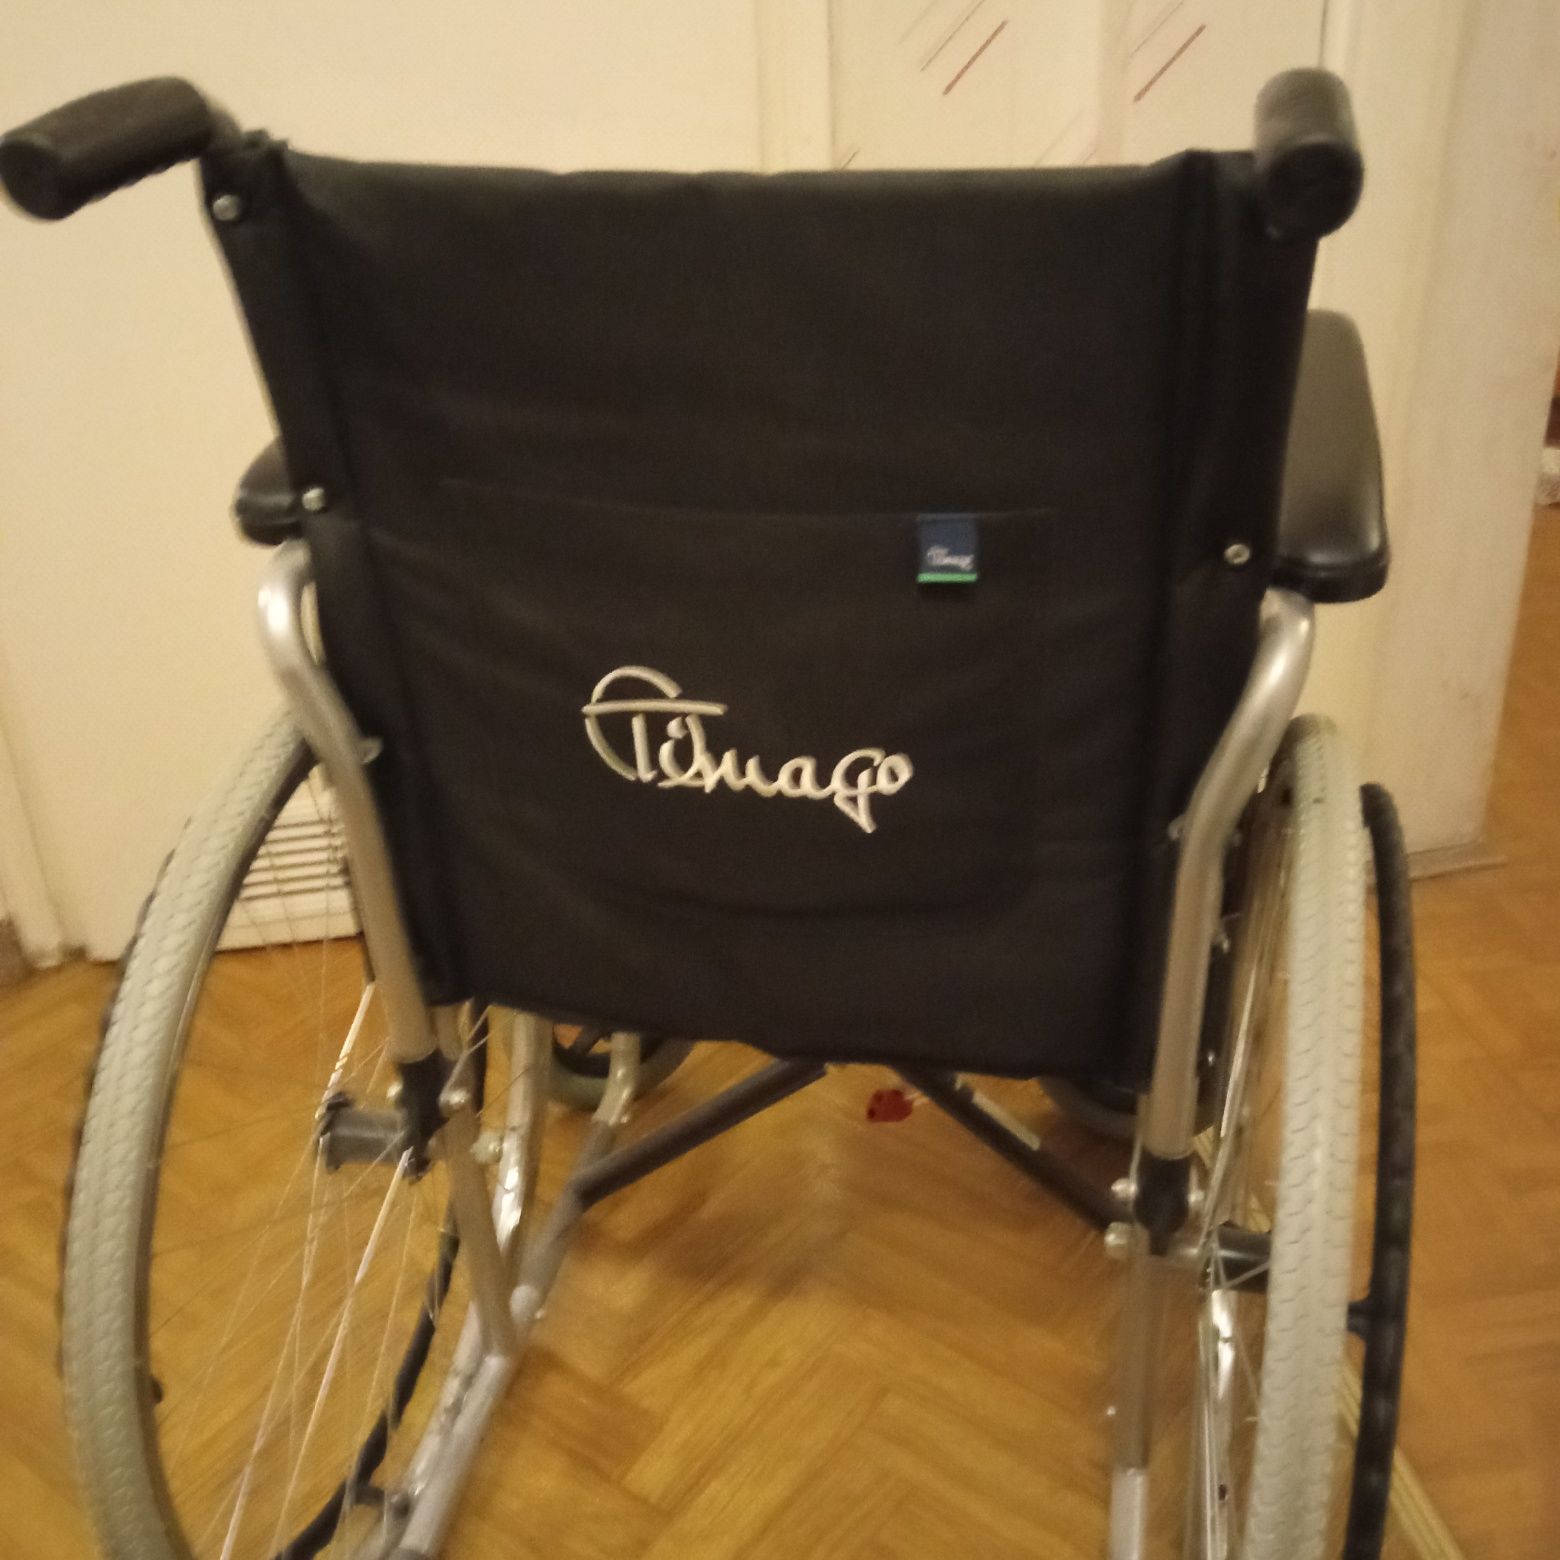 Wózek inwalidzki Timago Stan bardzo dobry